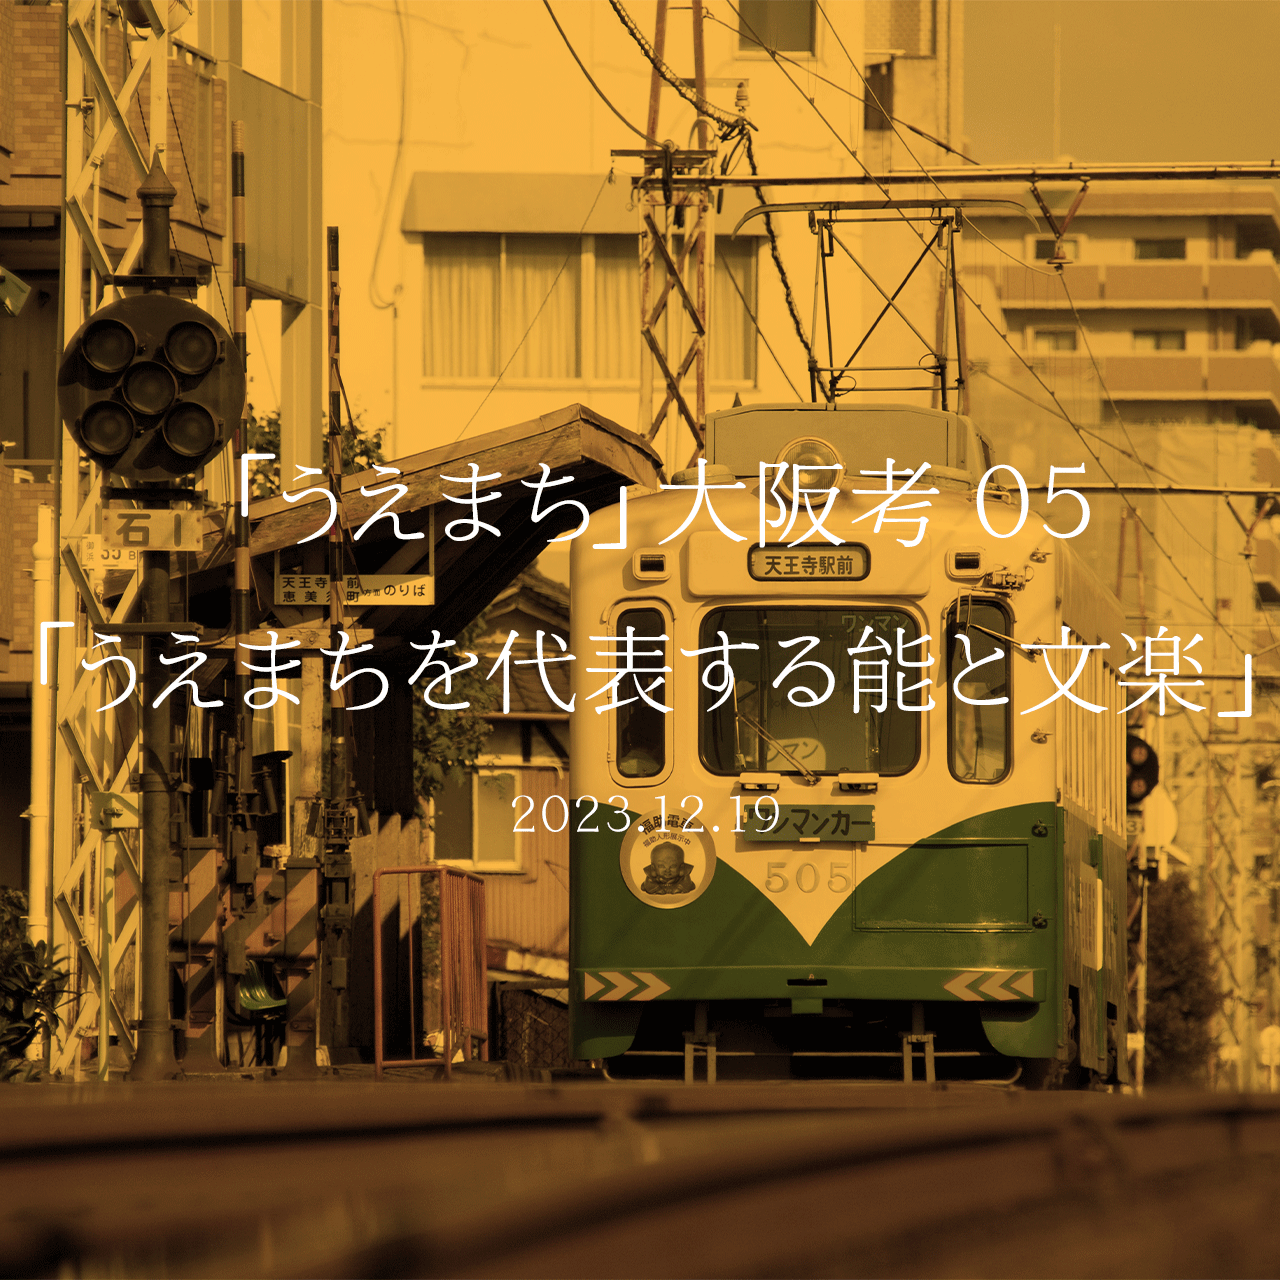 「うえまち」大阪考 05「うえまちを代表する能と文楽」